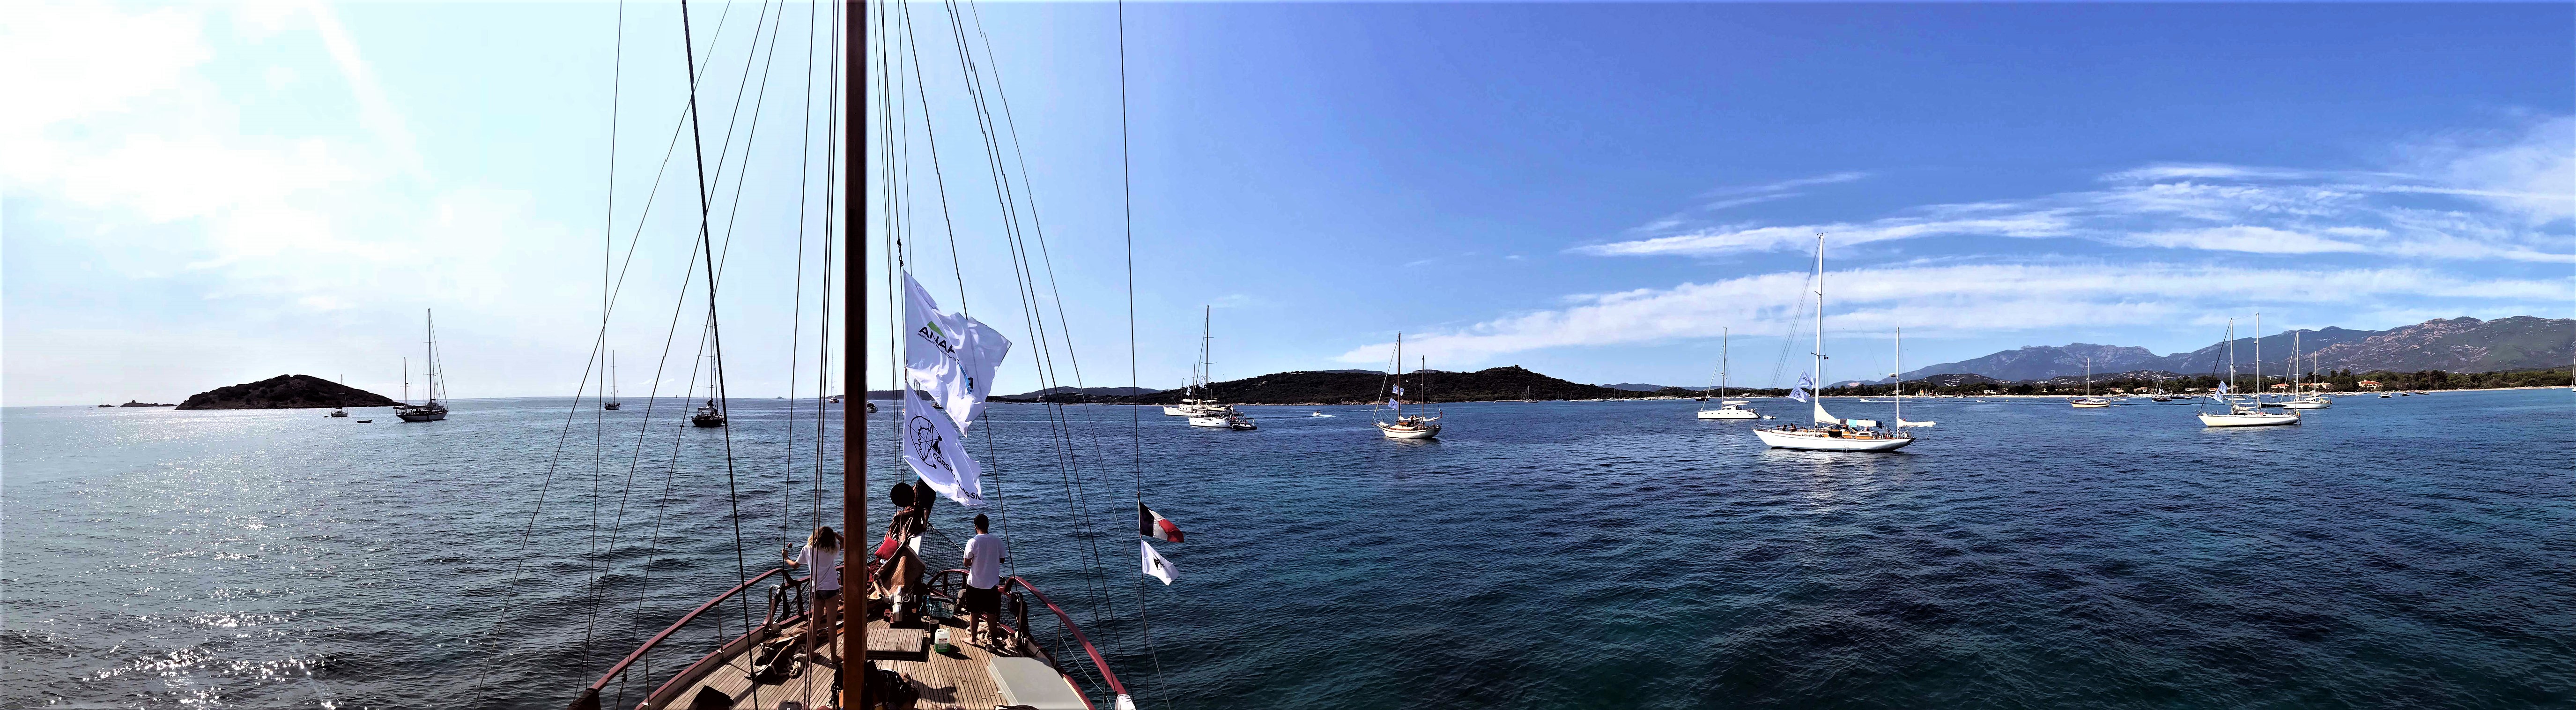 Saint-Cyprien flotte au mouillage Corsica Classic 2018 photo Thibaud Assante DR